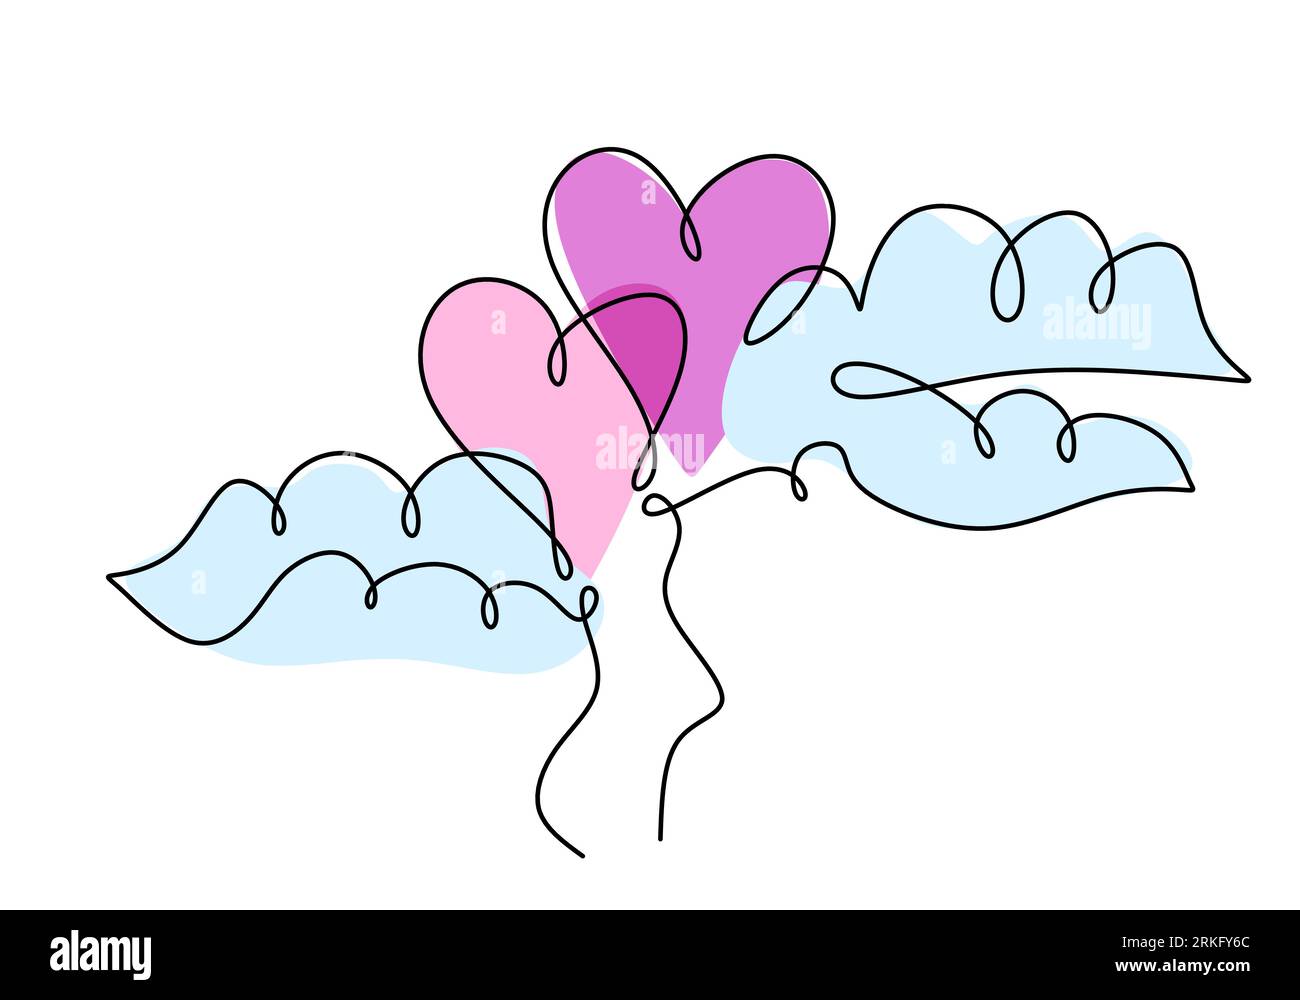 Un dessin en ligne continue de deux ballons en forme de coeur dans l'air. Concept de carte d'invitation de mariage romantique isolé sur fond blanc. Joyeux Valen Illustration de Vecteur